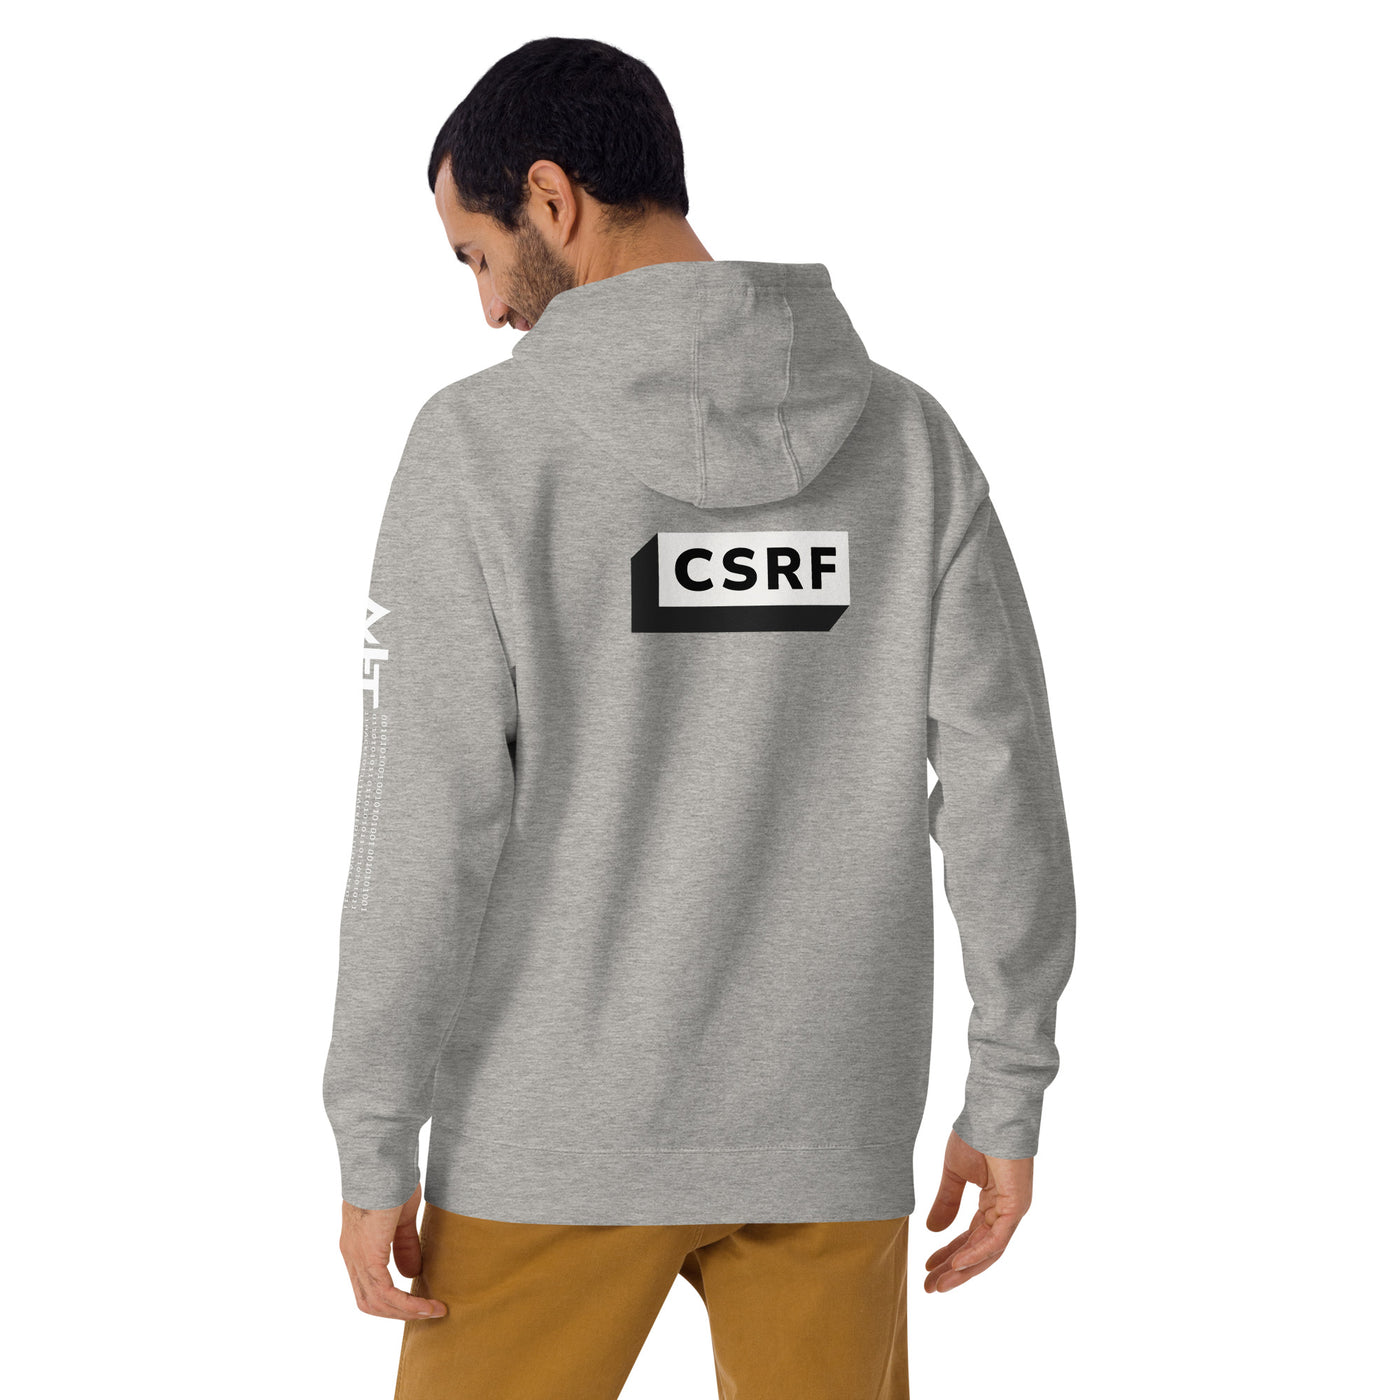 CSRF - Unisex Hoodie (back print)